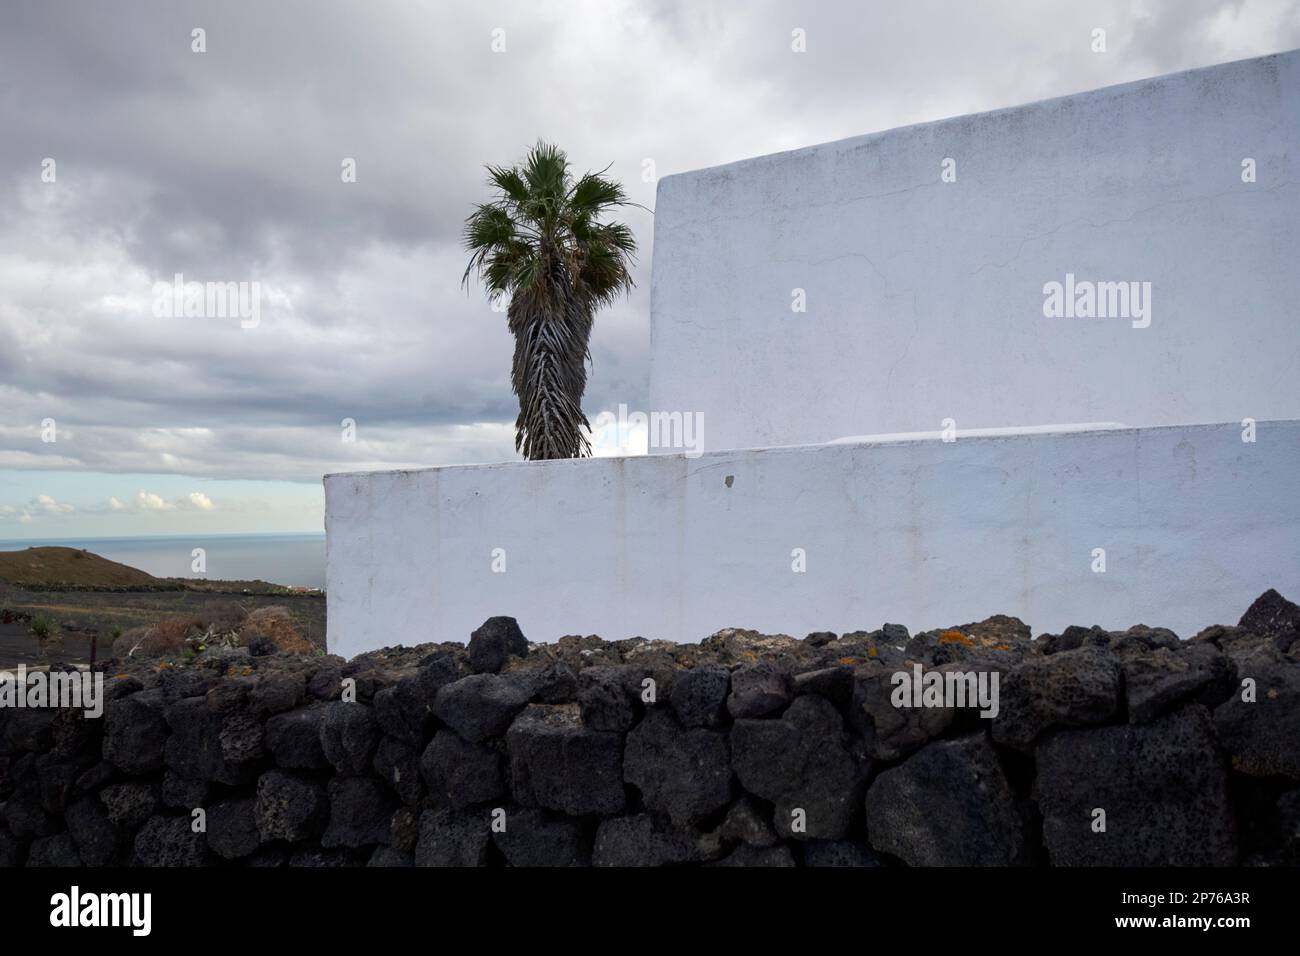 Typische quadratische Konstruktion, weiß getünchte Wände, vulkanische Felswand und Palme eines kleinen Bauernhofs Lanzarote, Kanarische Inseln, Spanien Stockfoto